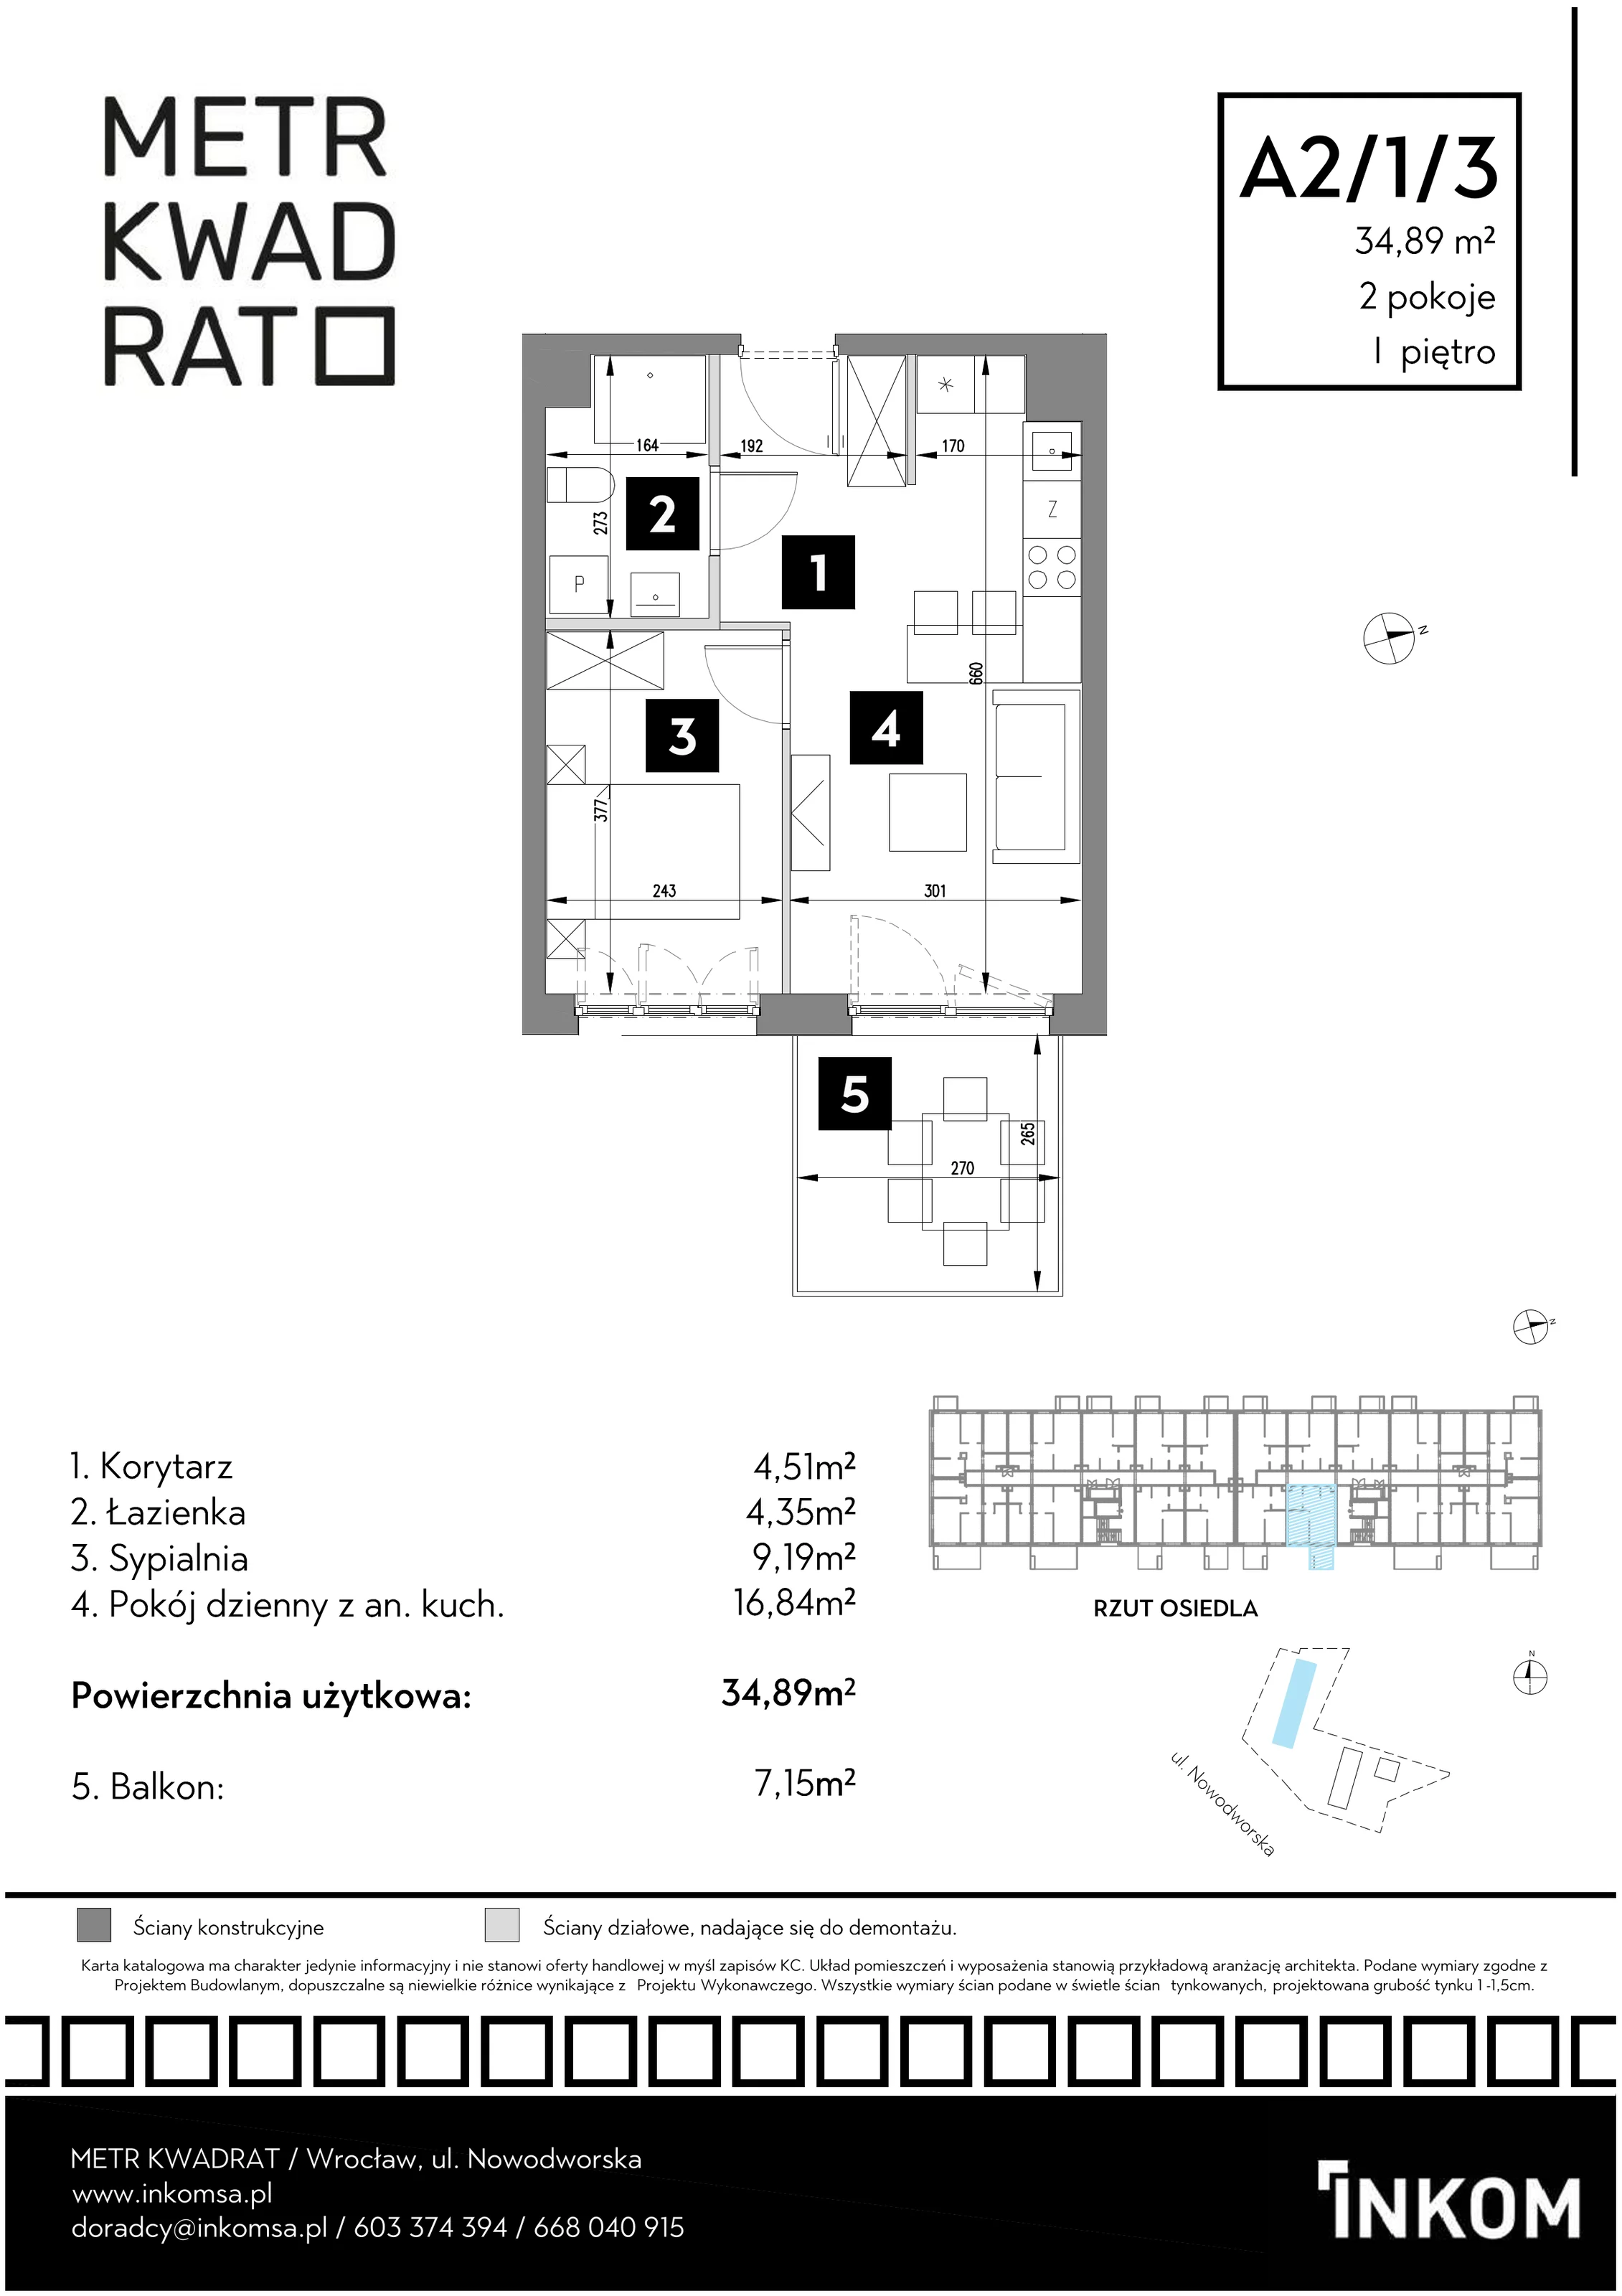 Mieszkanie 34,89 m², piętro 1, oferta nr A2/1/3, Metr Kwadrat, Wrocław, Nowy Dwór, ul. Nowodworska 17B